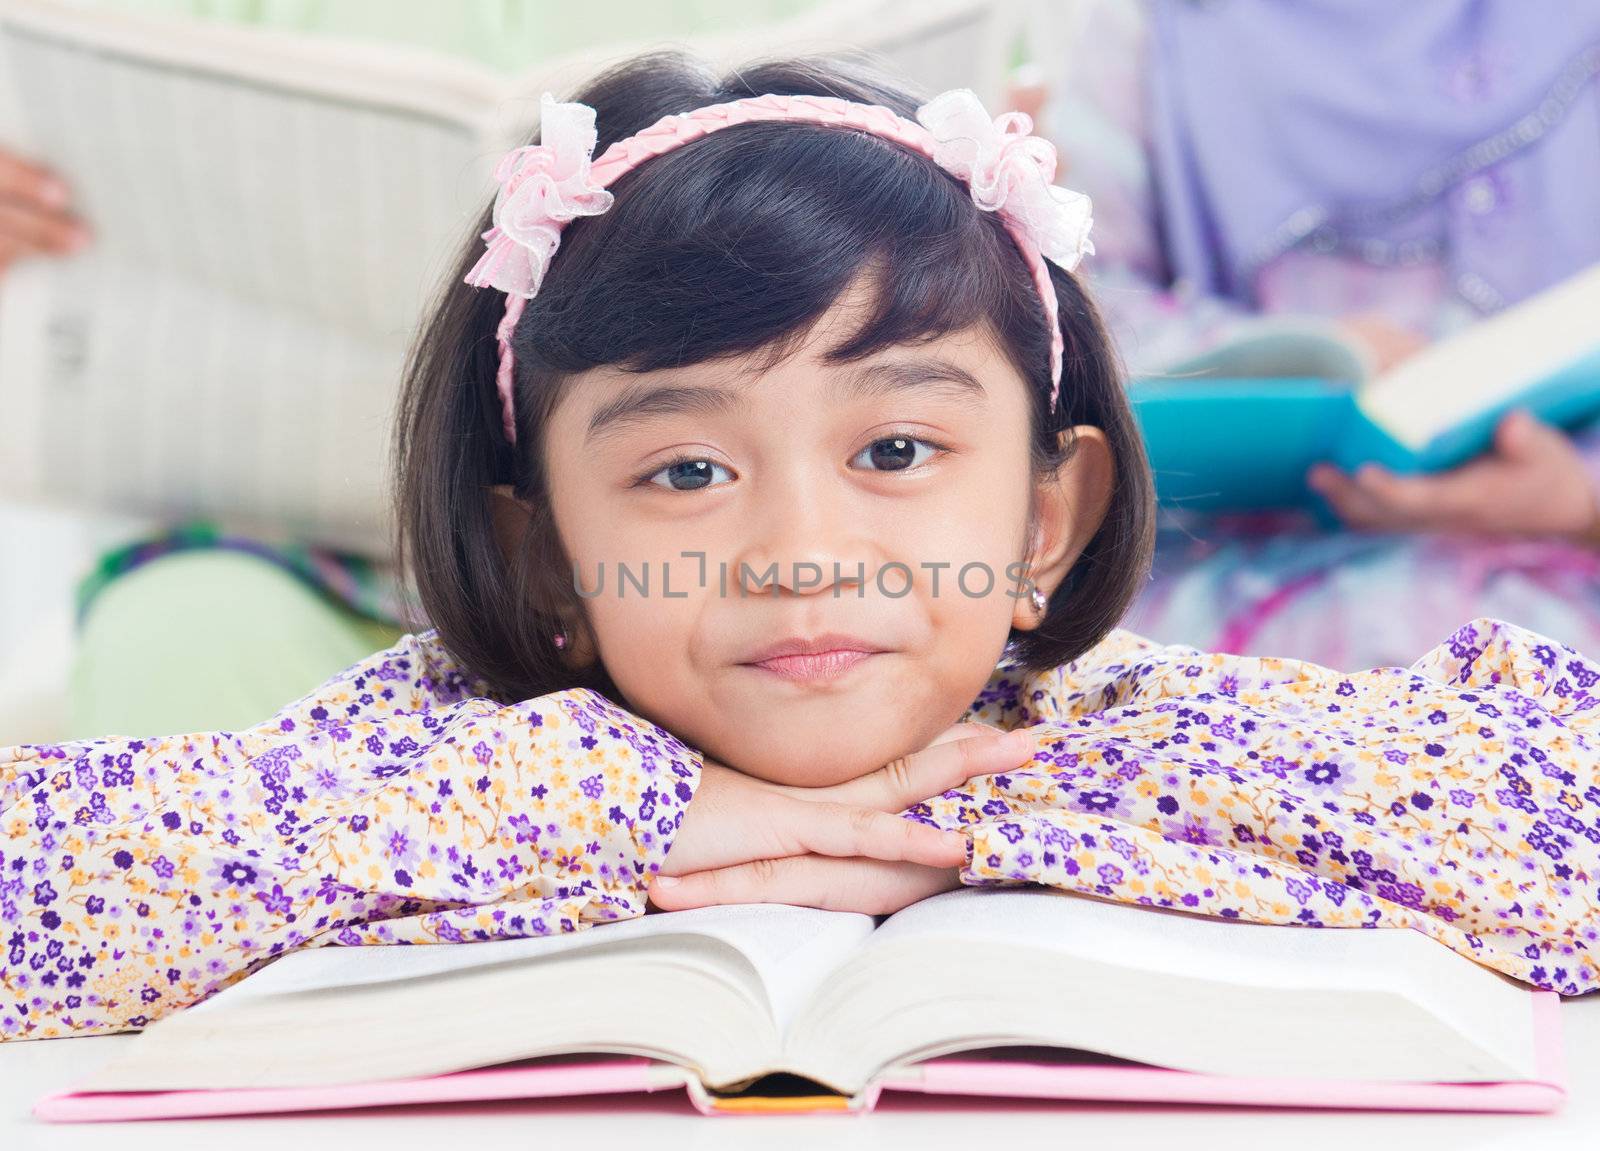 Muslim girl reading by szefei